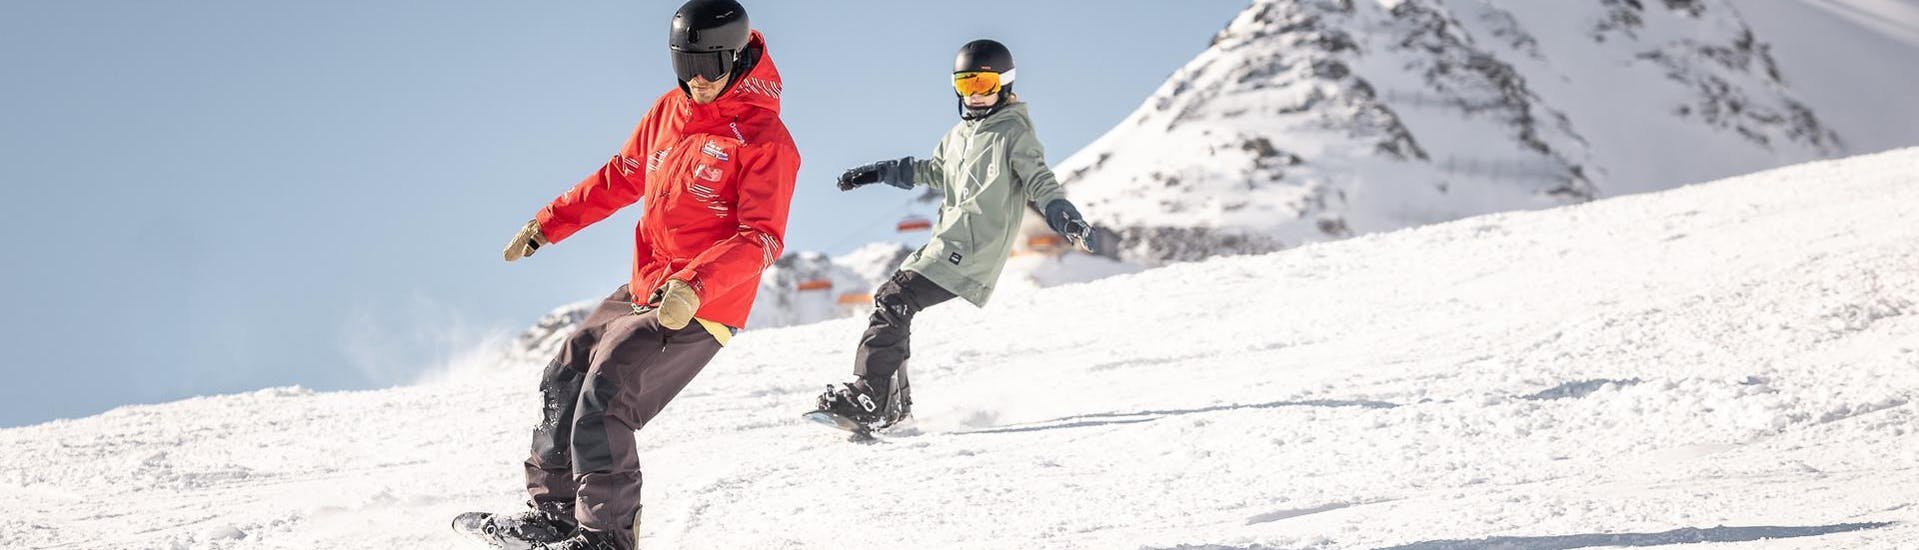 Een jongen leert snowboarden in Sölden in Oostenrijk.